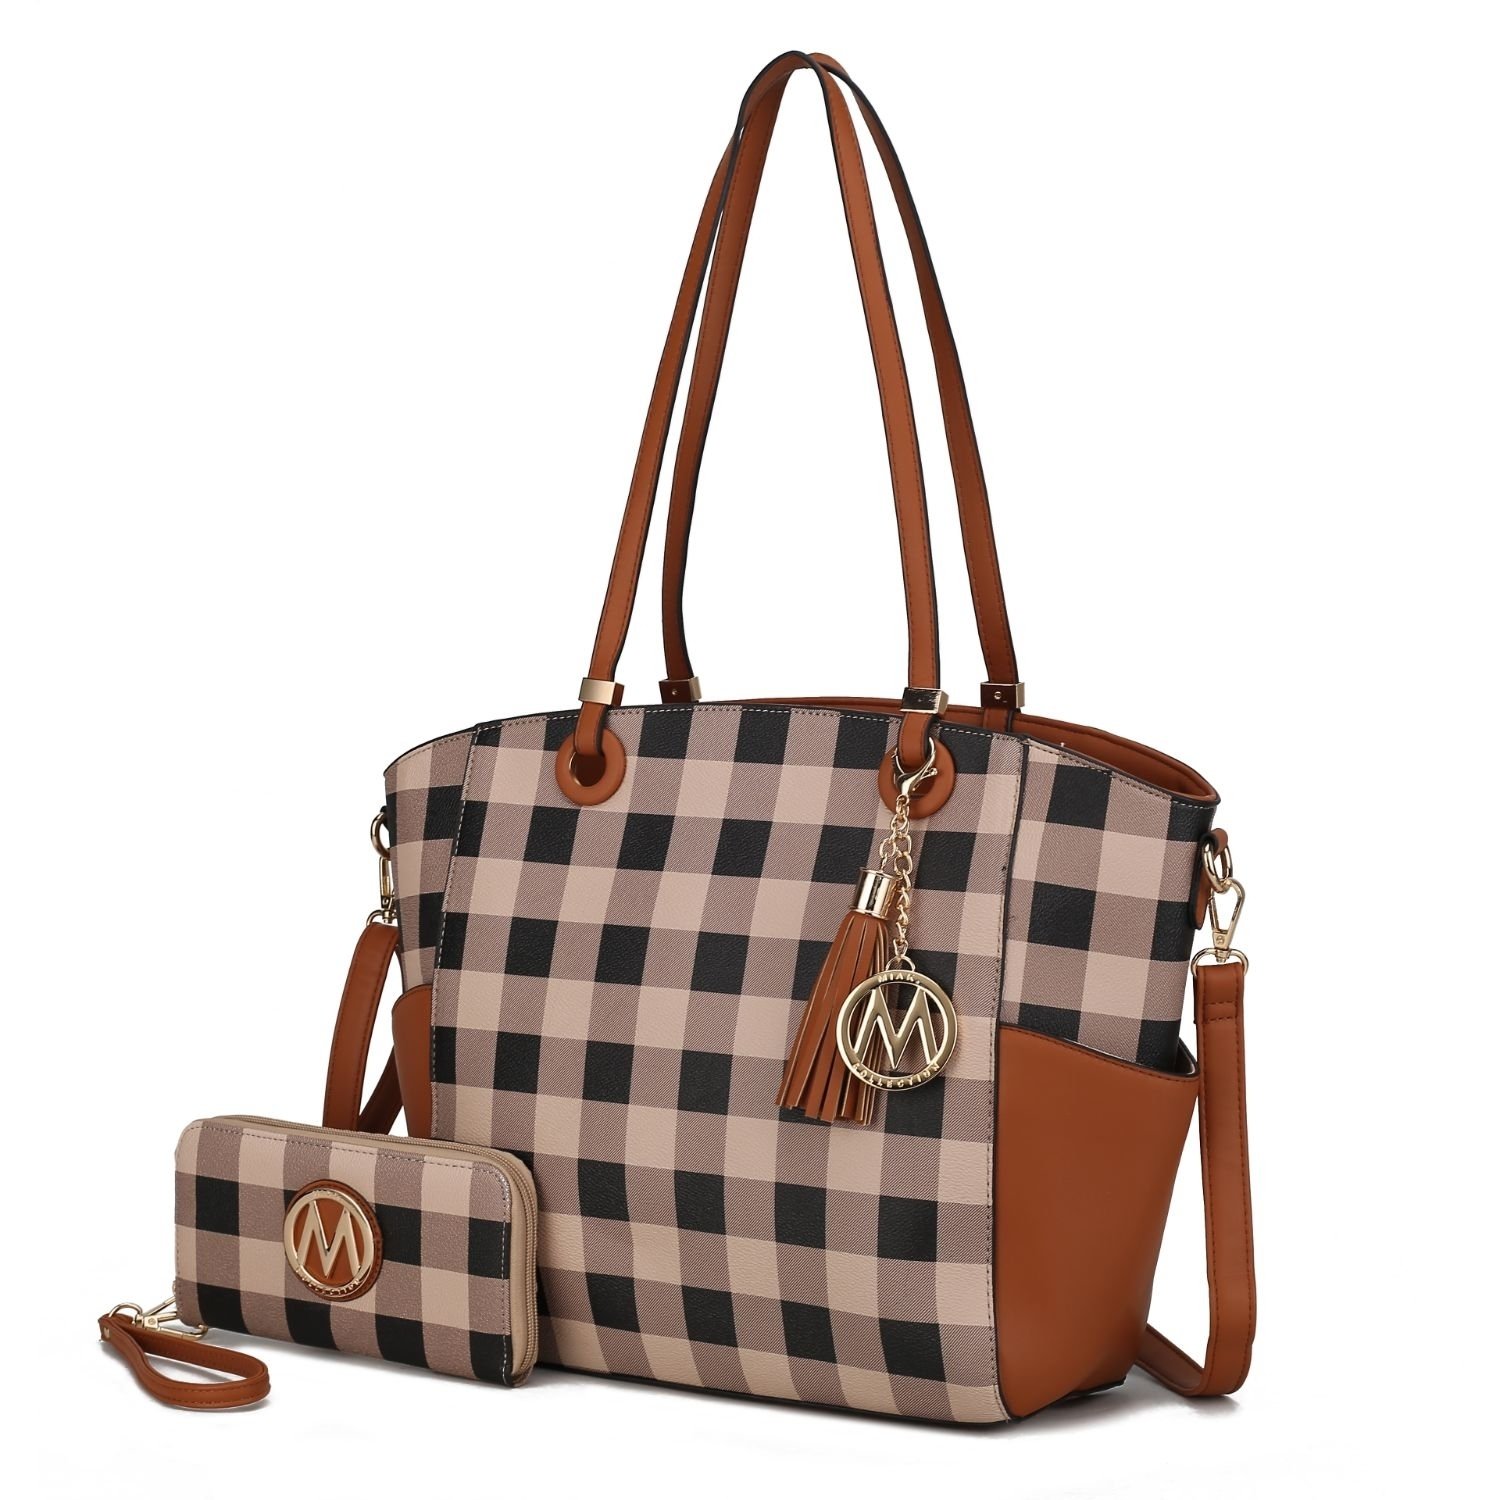 MKF Collection Karlie Tote Handbag With Wallet By Mia K - 2 Pieces - Cognac Brown